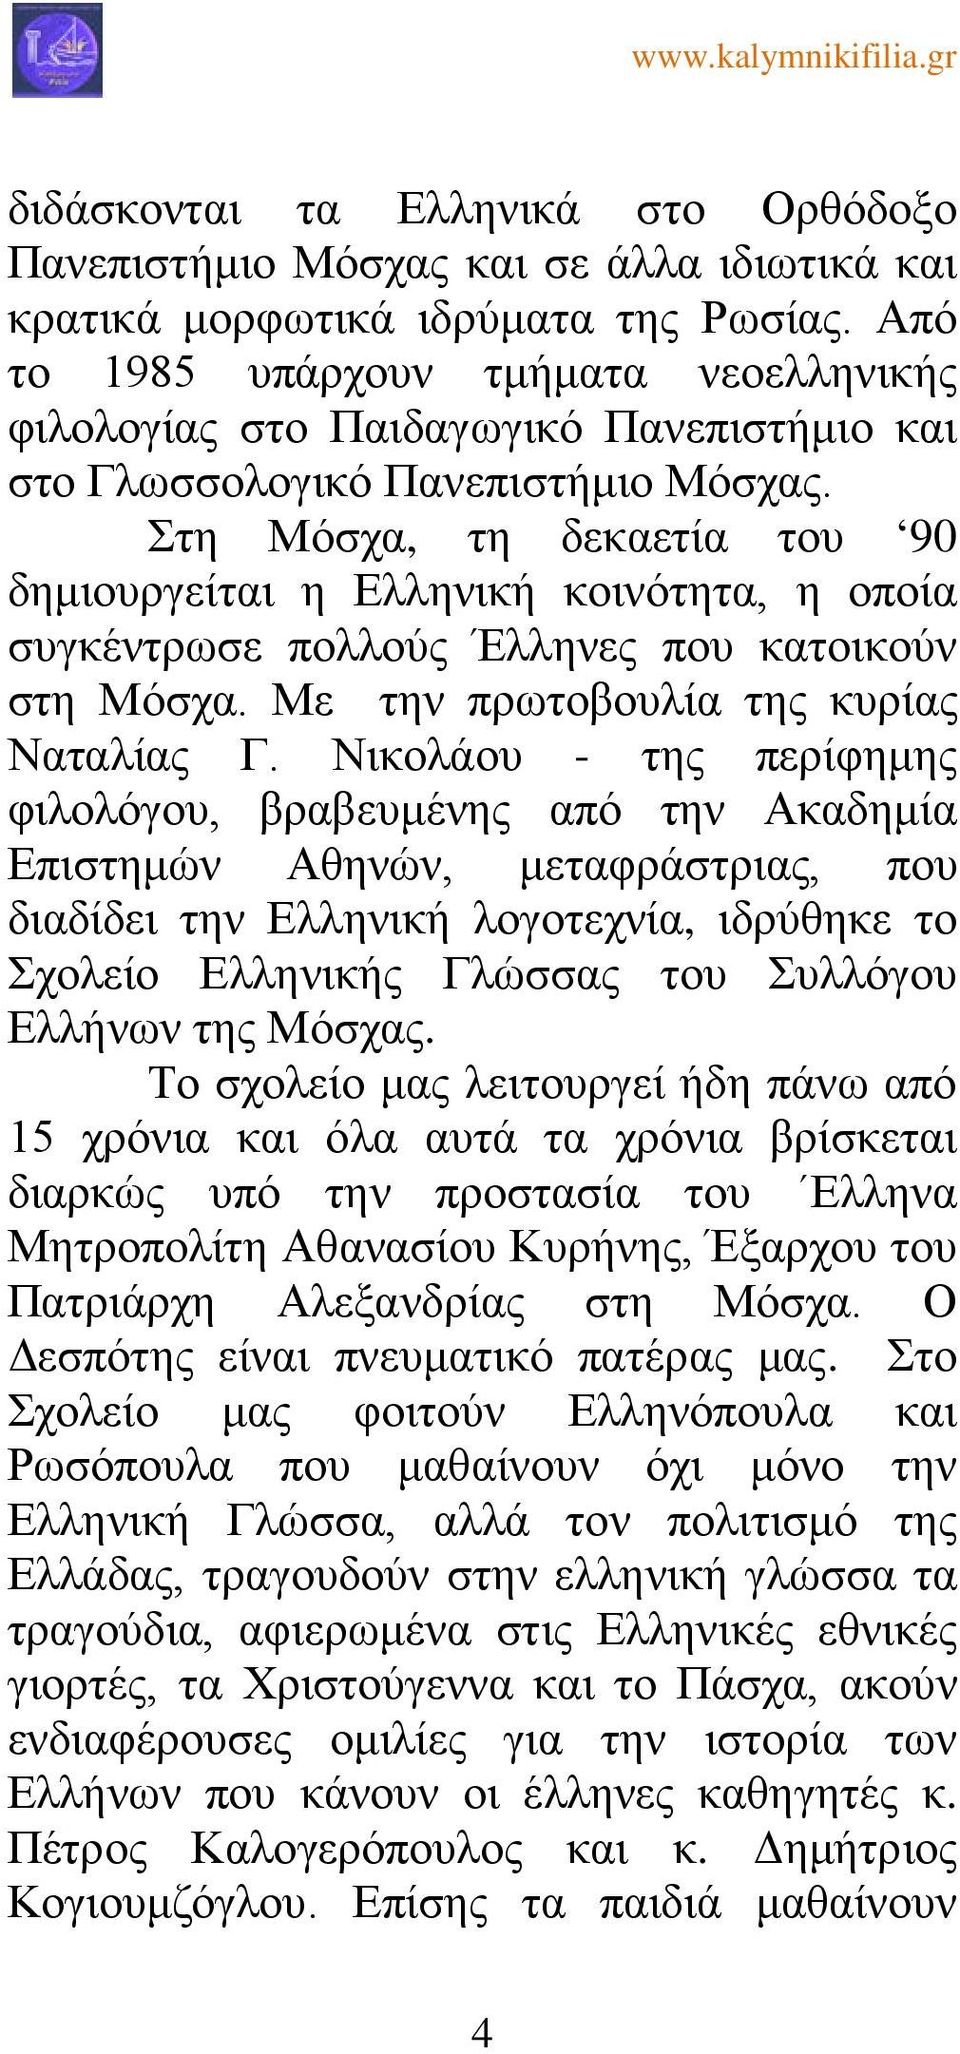 Στη Μόσχα, τη δεκαετία του 90 δημιουργείται η Ελληνική κοινότητα, η οποία συγκέντρωσε πολλούς Έλληνες που κατοικούν στη Μόσχα. Με την πρωτοβουλία της κυρίας Nαταλίας Γ.